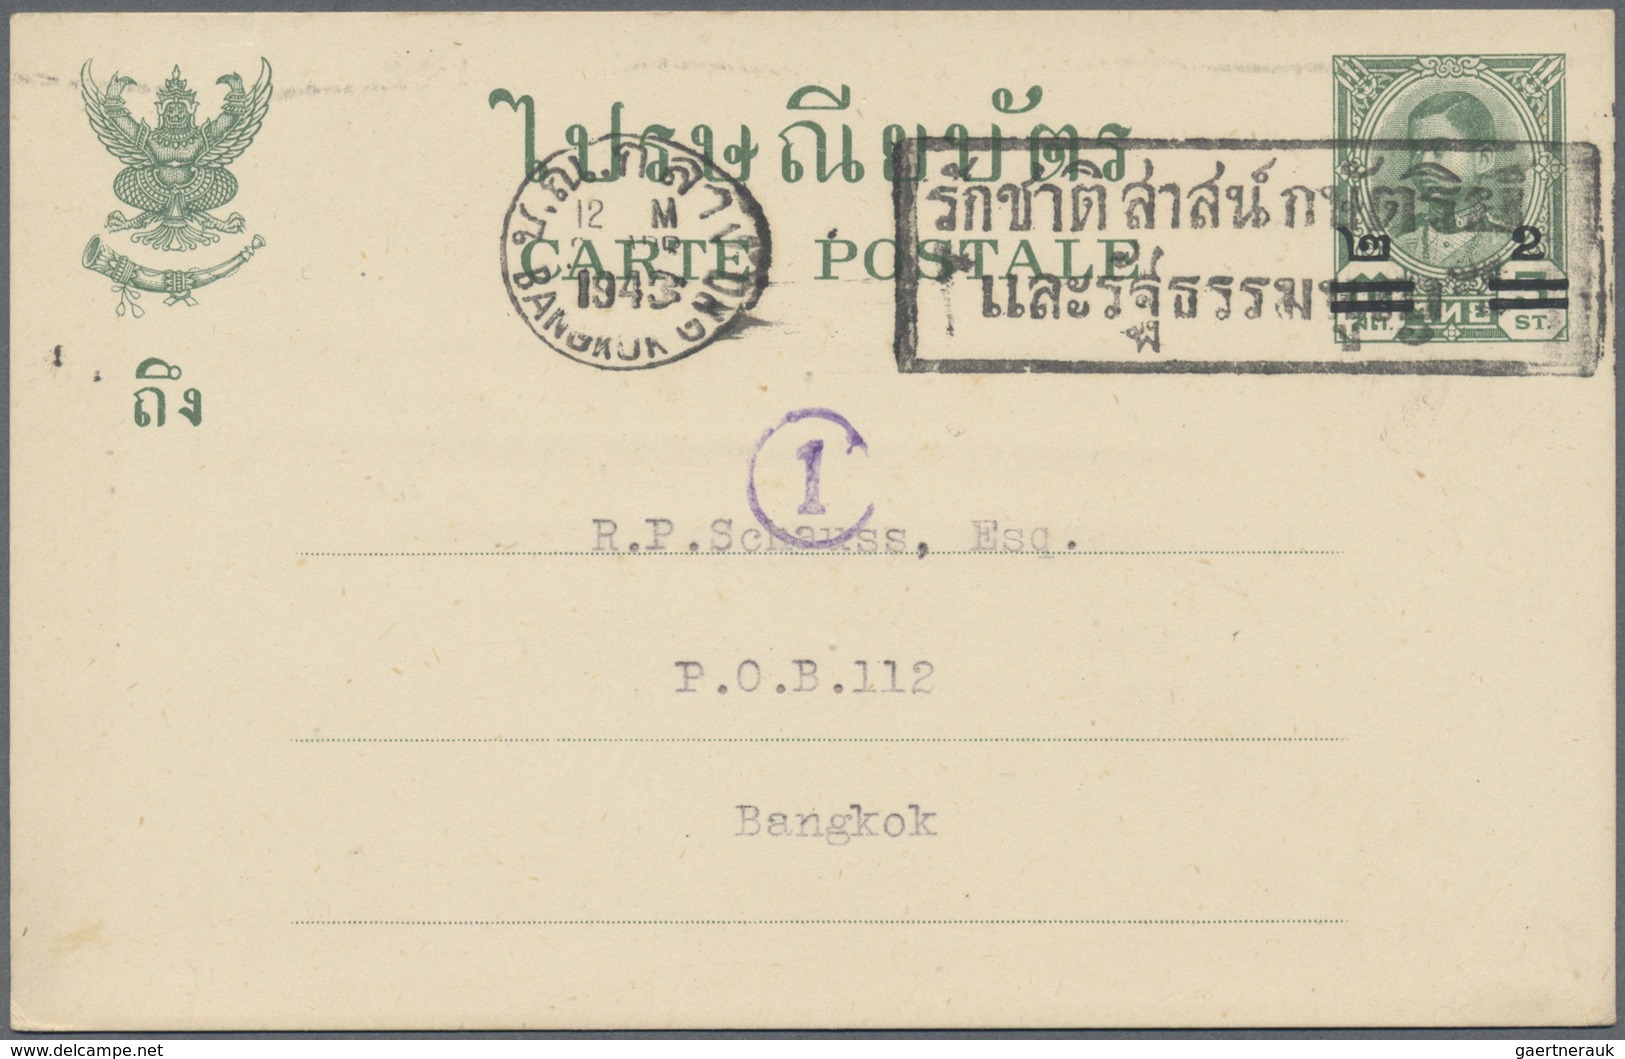 GA Thailand - Ganzsachen: 1942 Postal Stationery Card 2 On 3s. Green, Addressed Locally To R.P. Schauss - Thailand